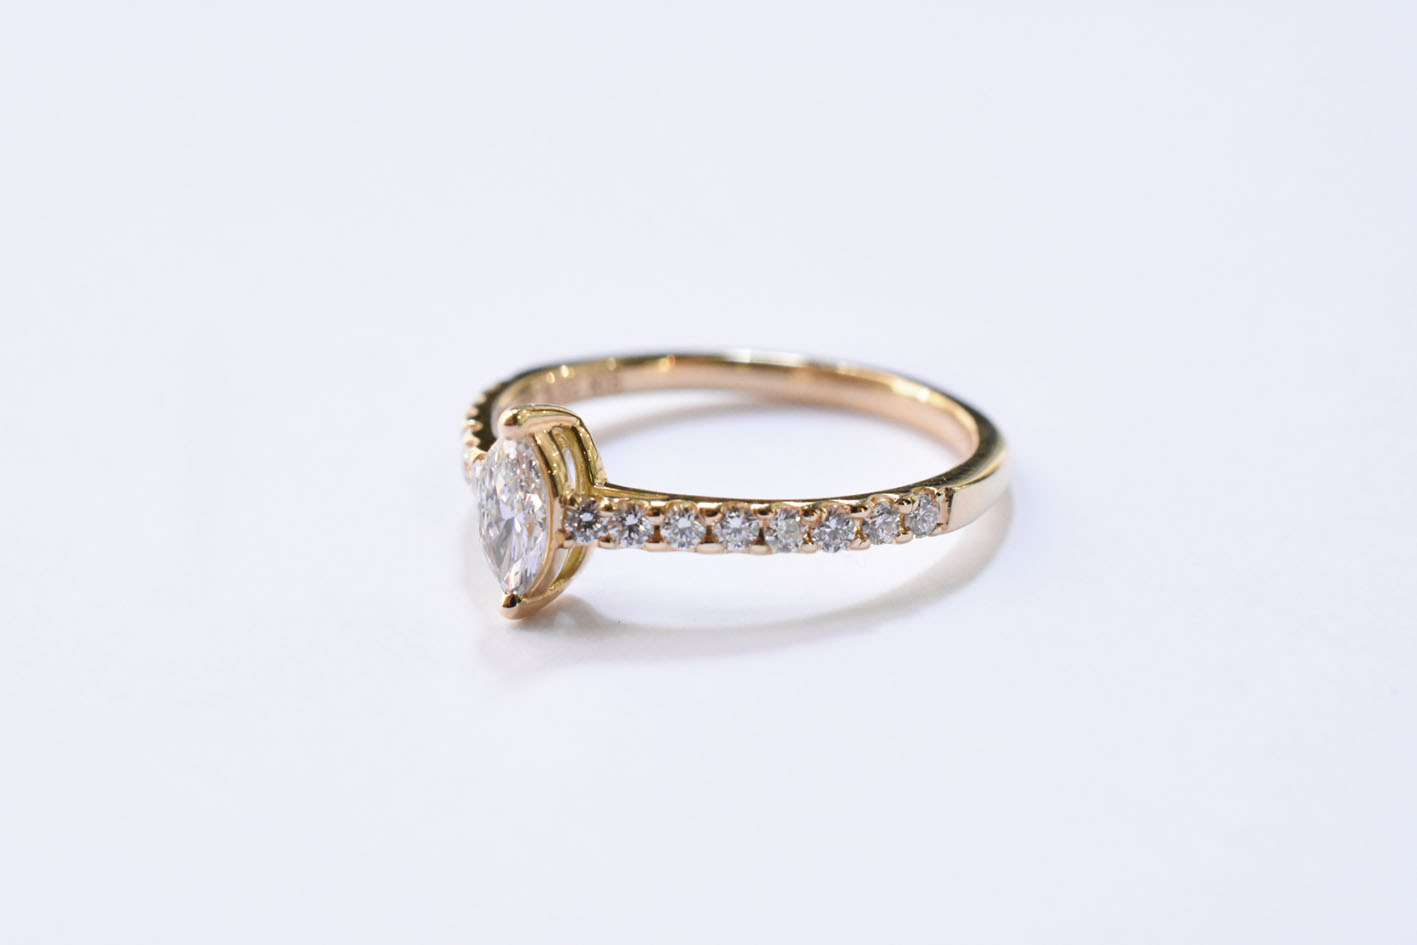 K18YG / Marquise Cut Diamond Ring 0.212ct / D / VVS-1